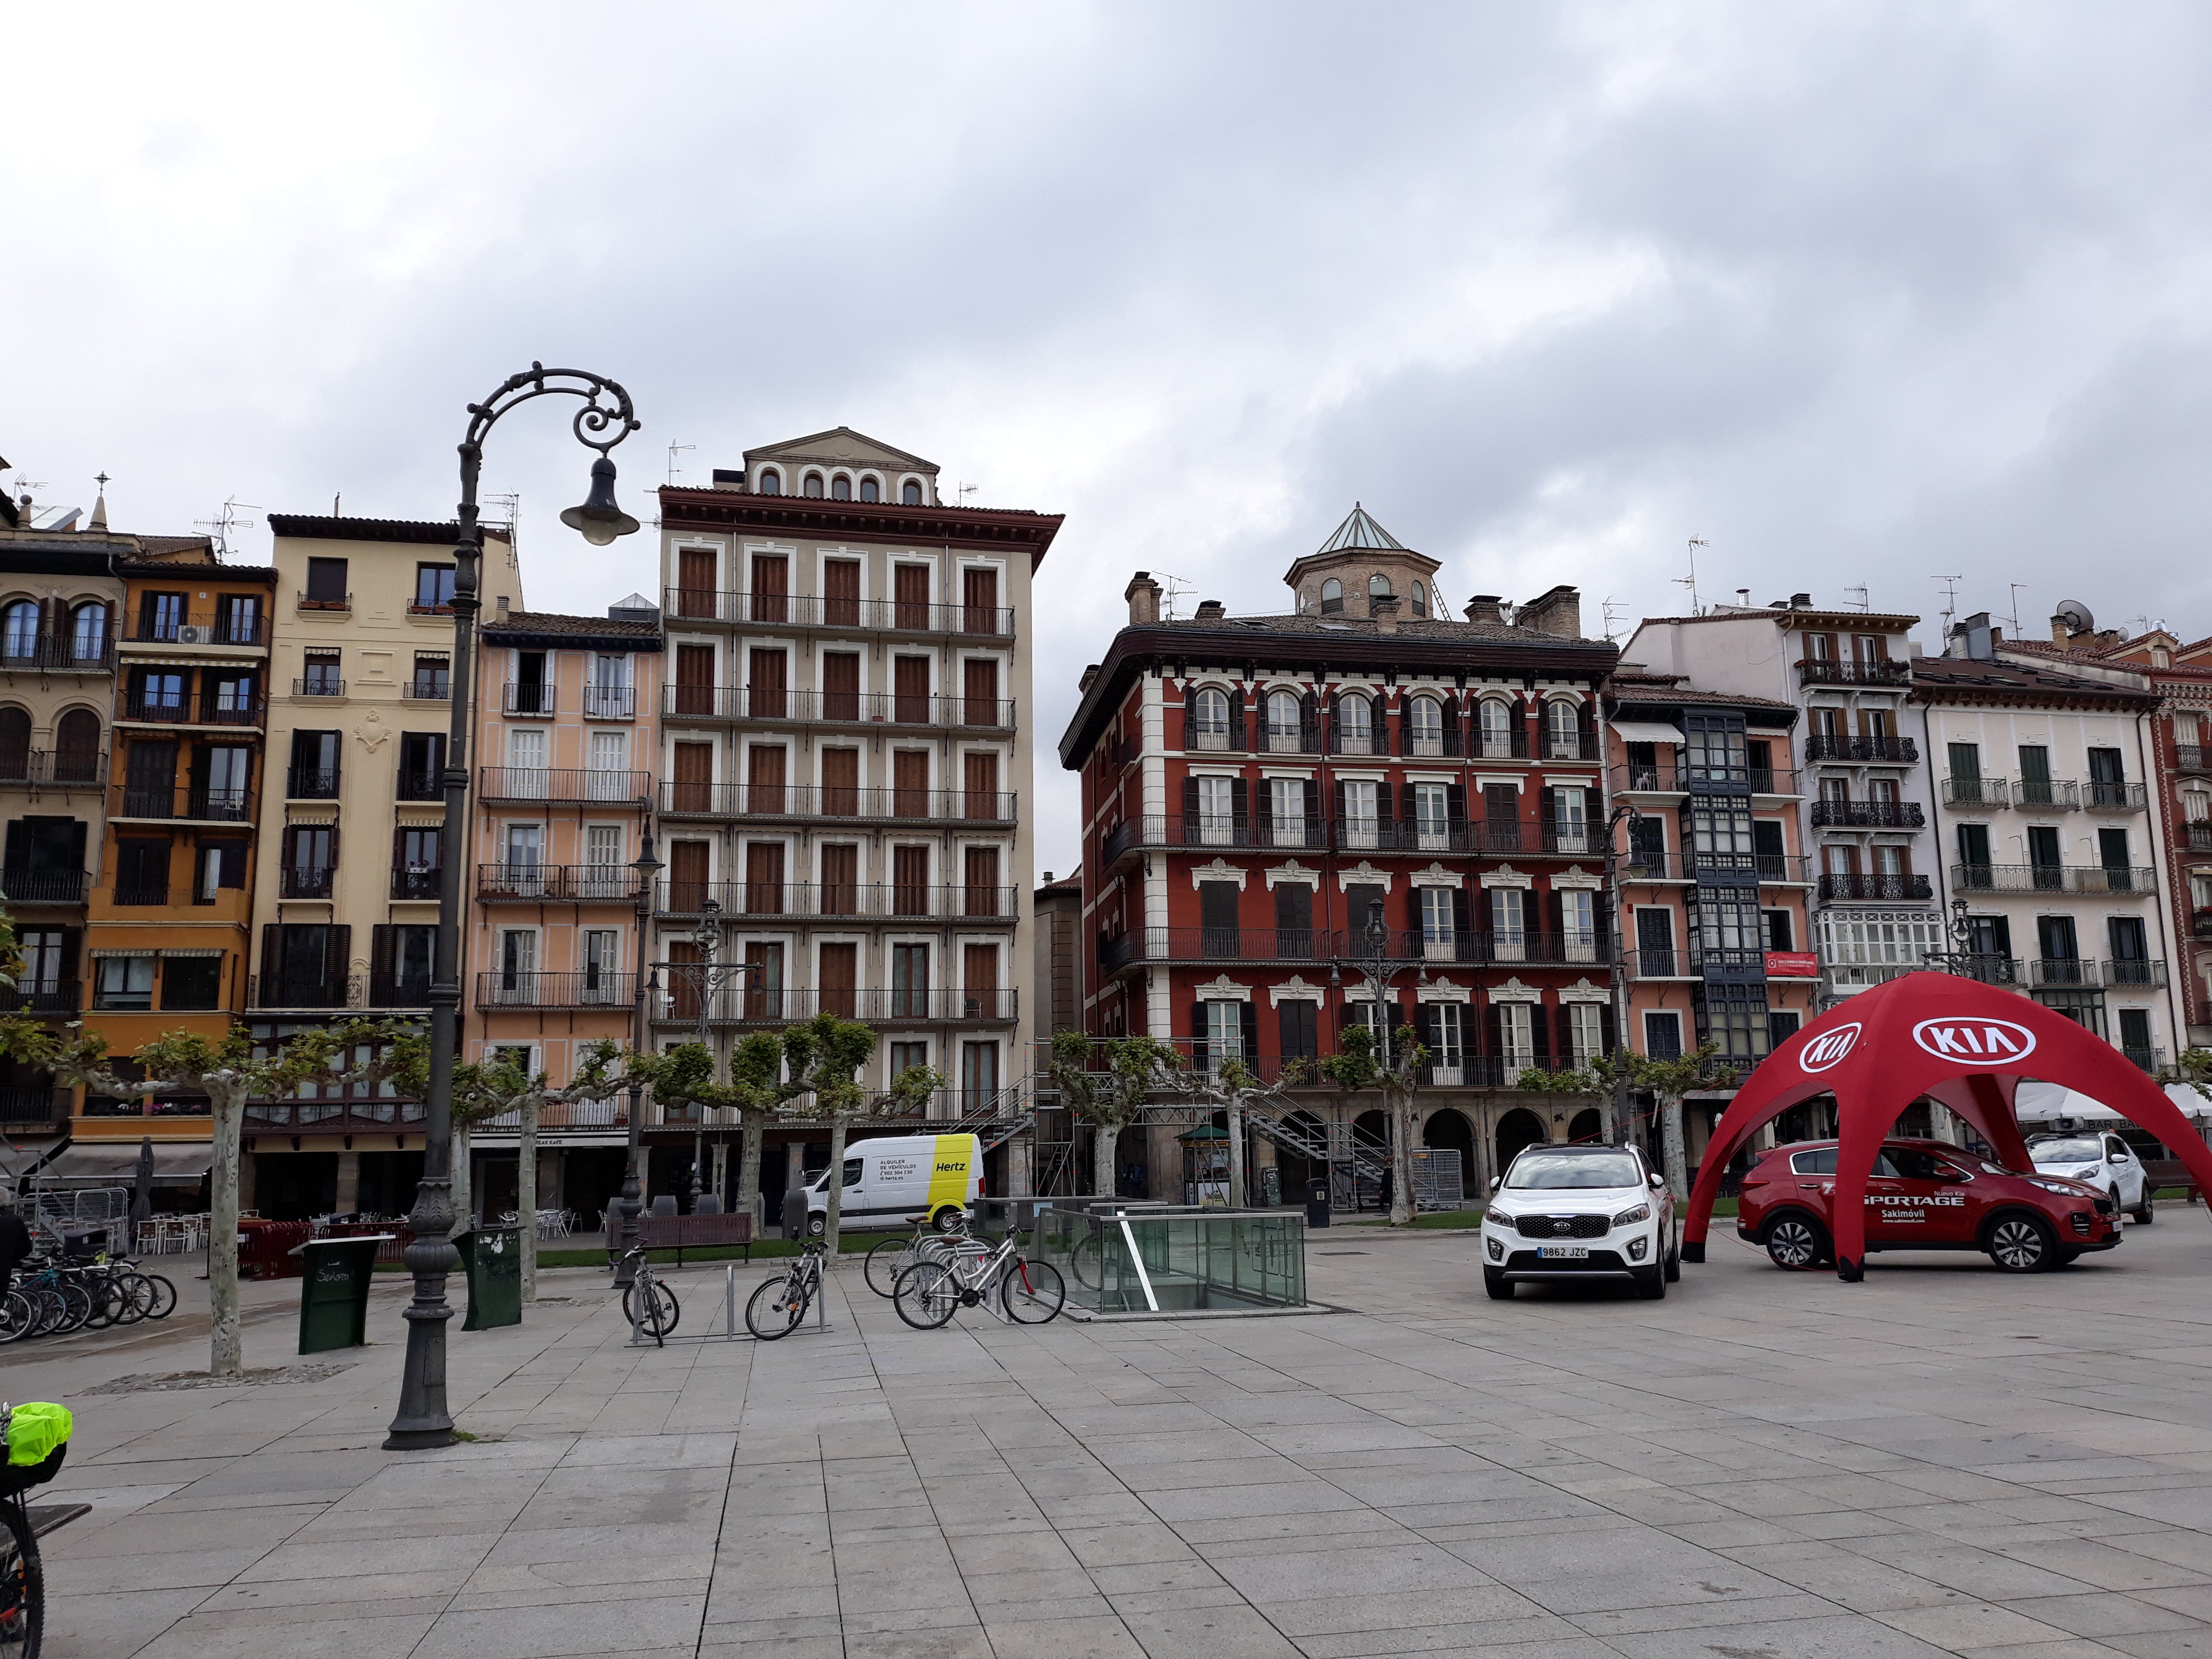 Pamplona főtér, kerékpáros túratársnőt keresek